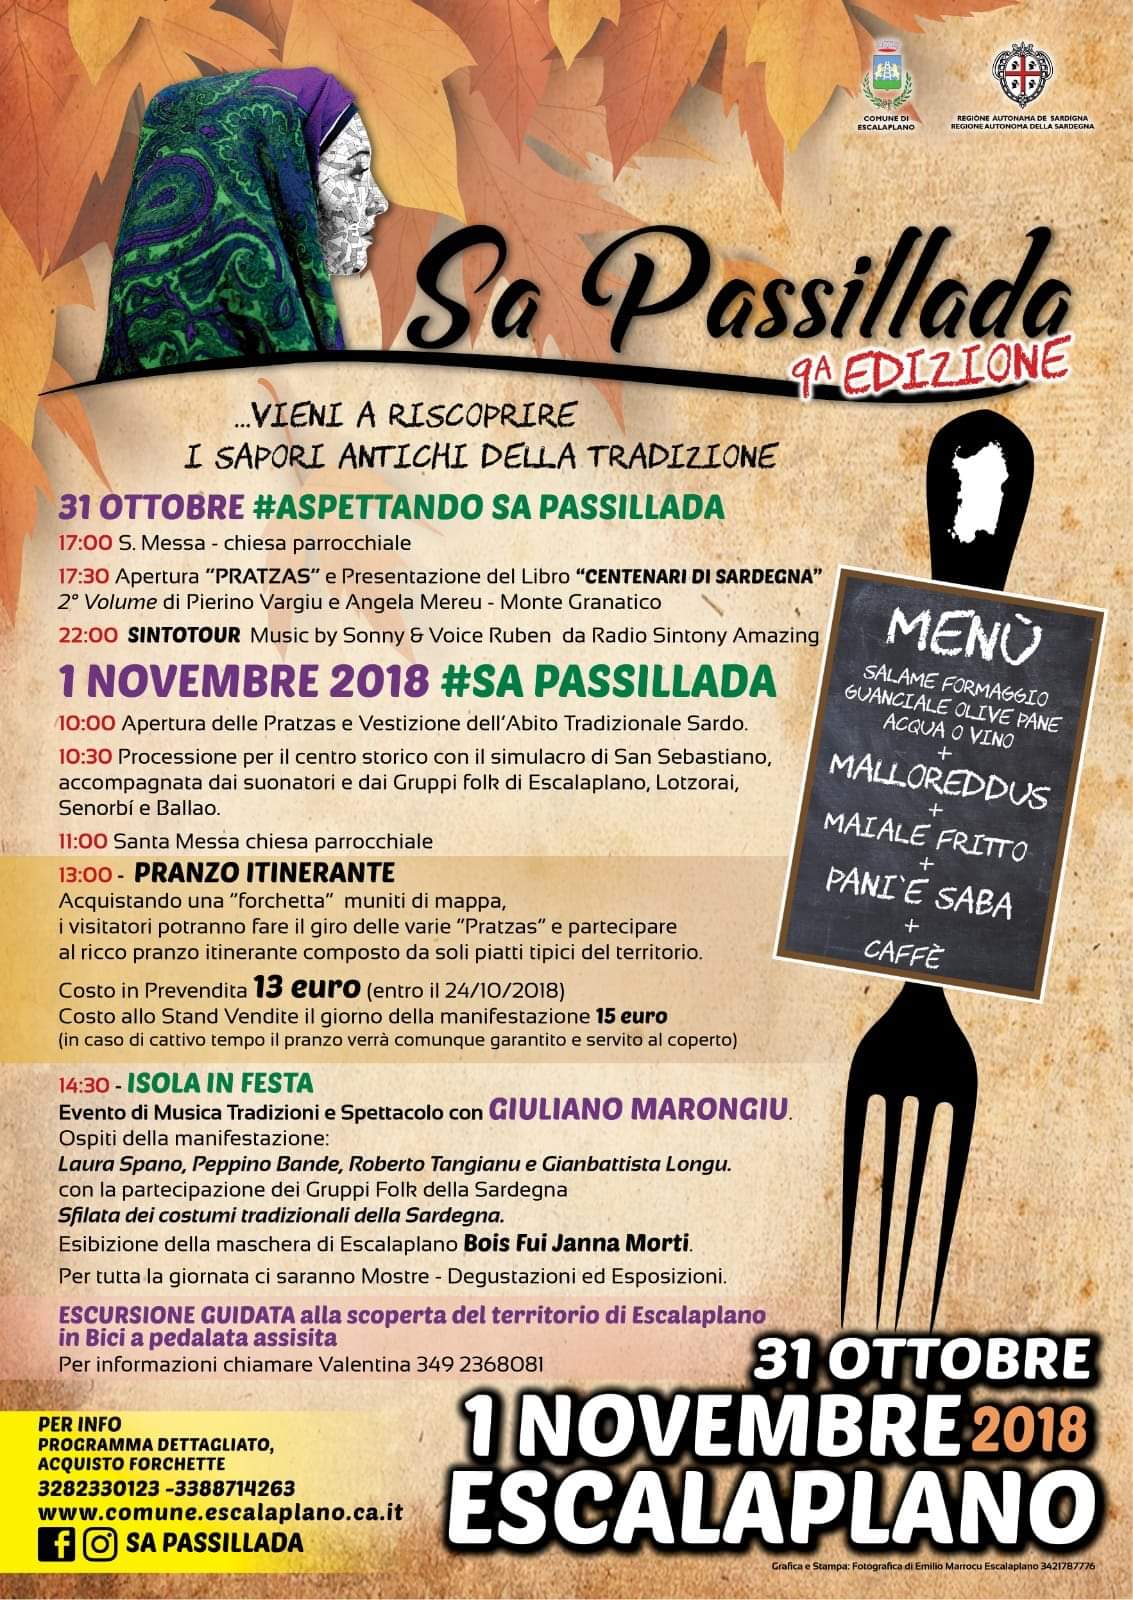 SA PASSILLADA - 9^ EDIZIONE - ESCALAPLANO 31 OTTOBRE 1° NOVEMBRE 2018